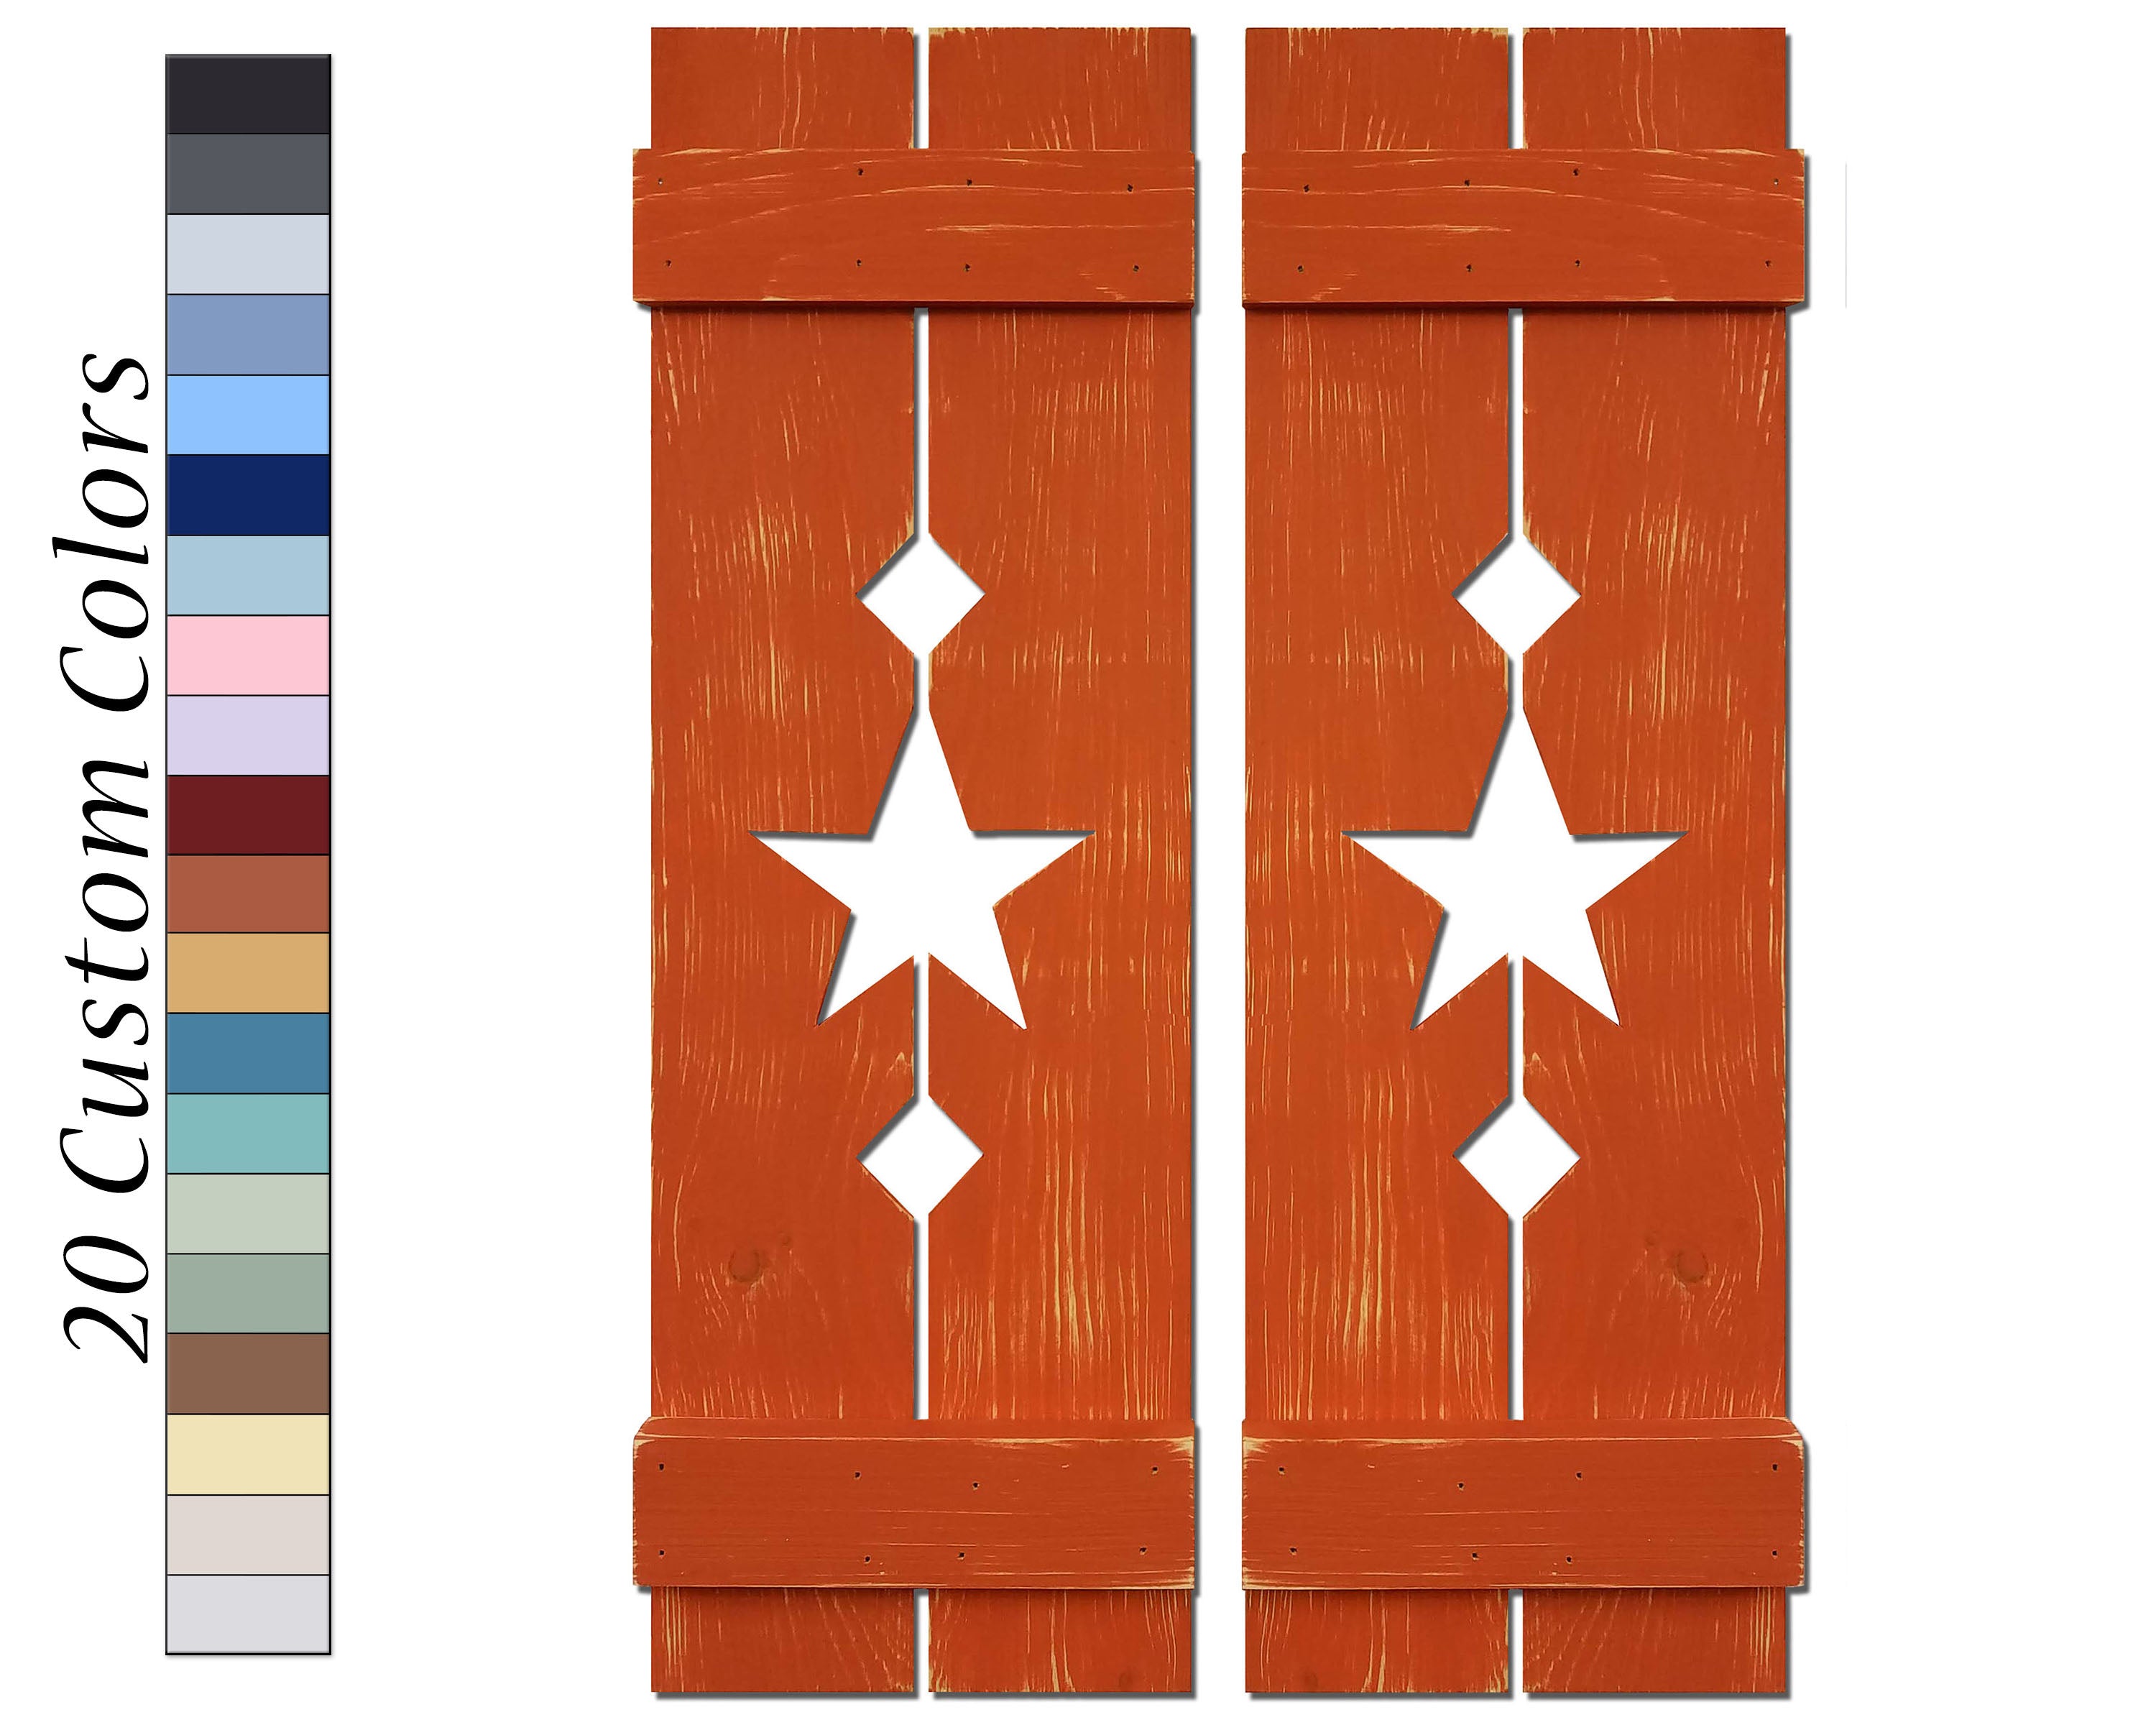 Board & Batten Shutters - 20 Stain Colors, Shown in Special Walnut